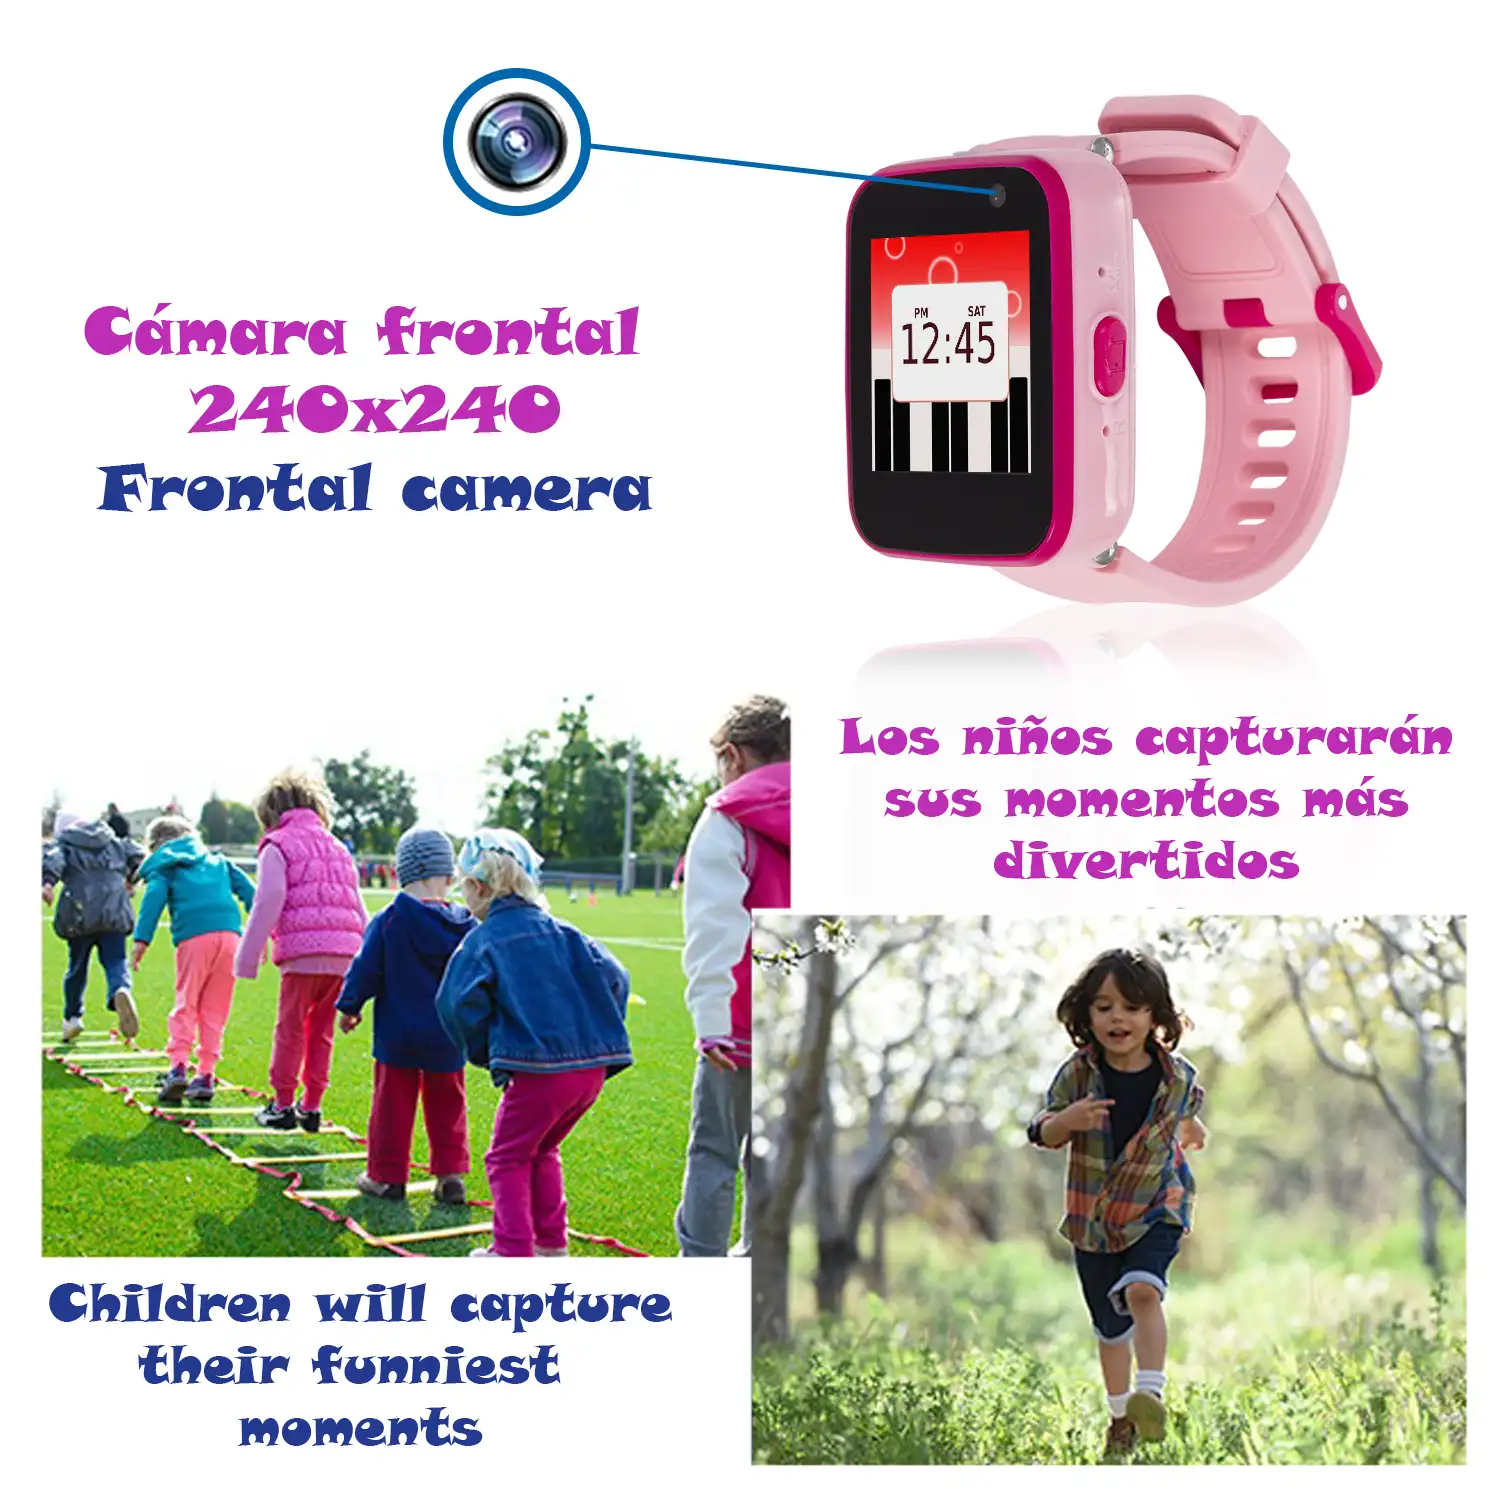 Smartwatch infantil CT5 con cámara de fotos, 5 juegos, grabadora de voz y reproductor de música.